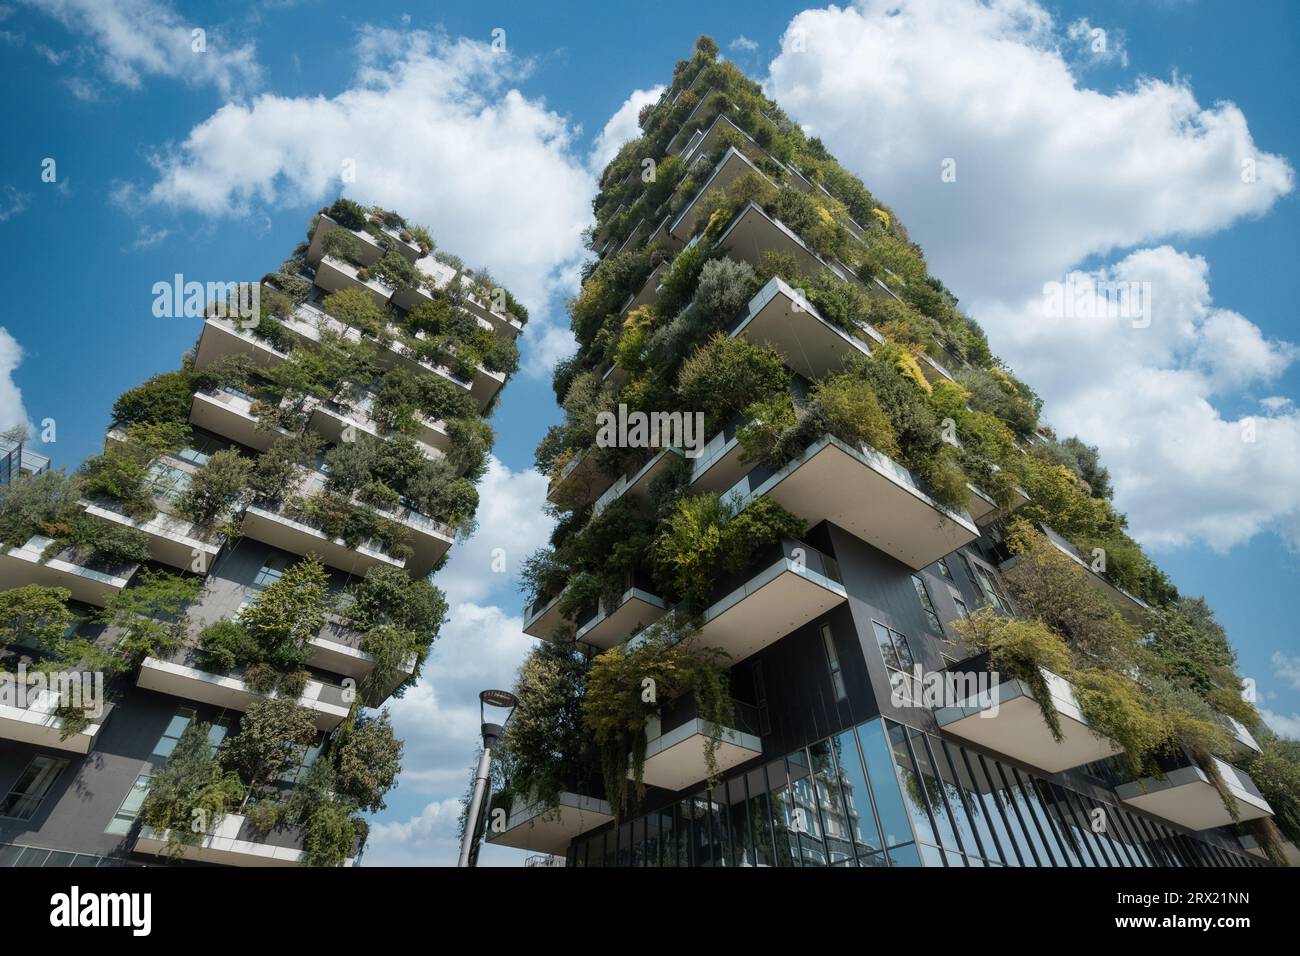 Moderne architektonische Wahrzeichen Bosco Verticale (Vertical Forest) Gebäude im Stadtteil Porta Nuova in Mailand, Italien. Stockfoto